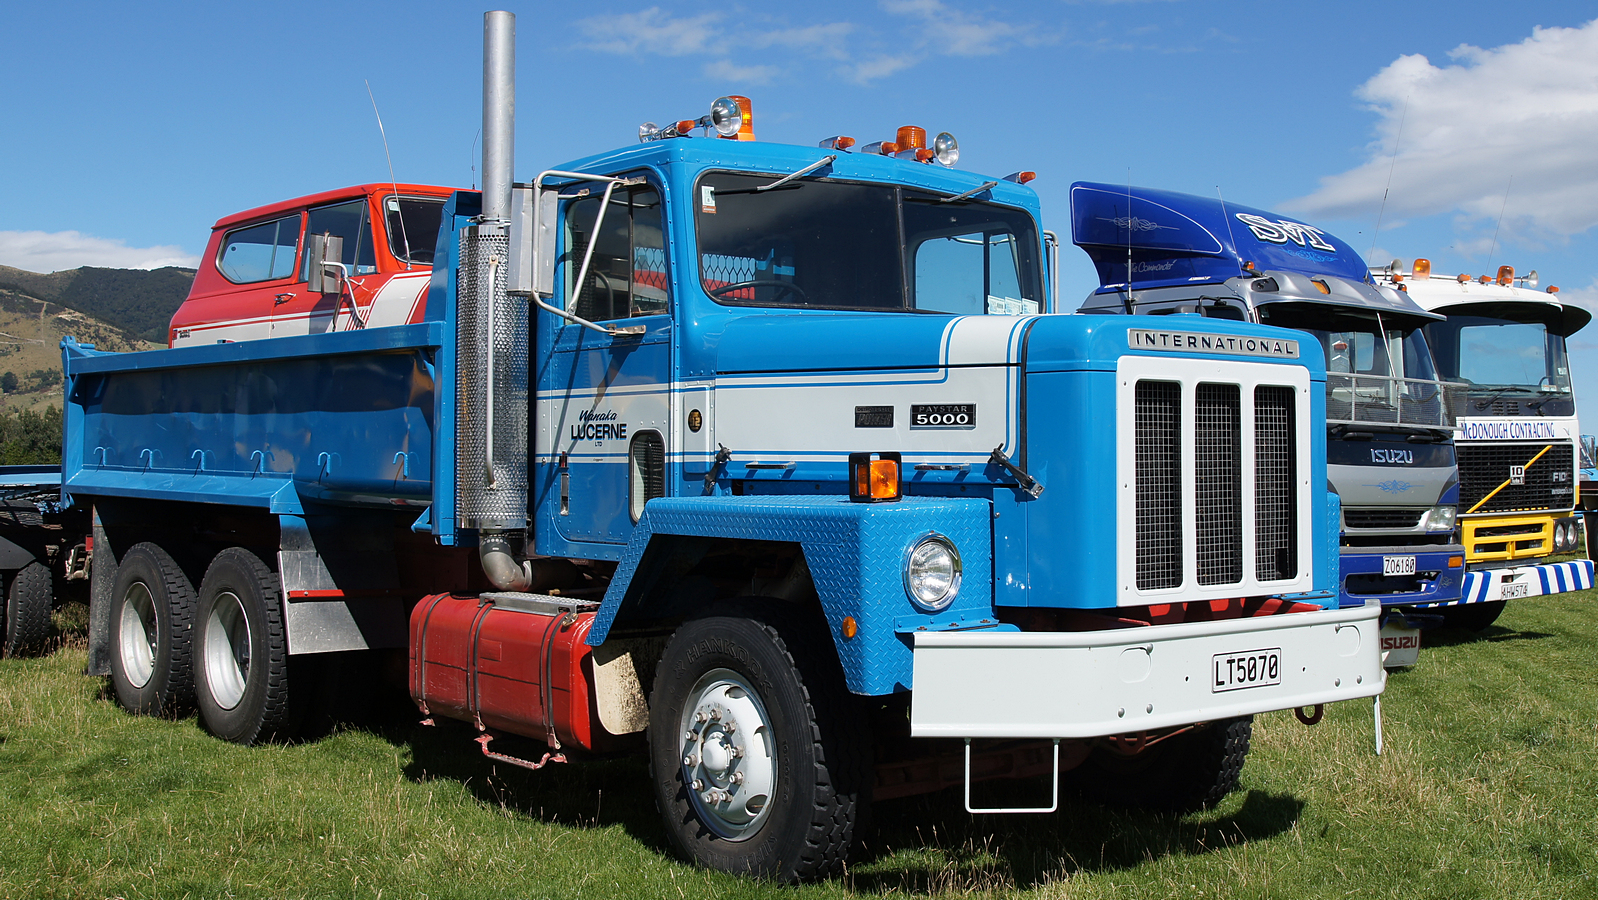 1975 International Paystar 5000 Truck. | Flickr - Photo Sharing!